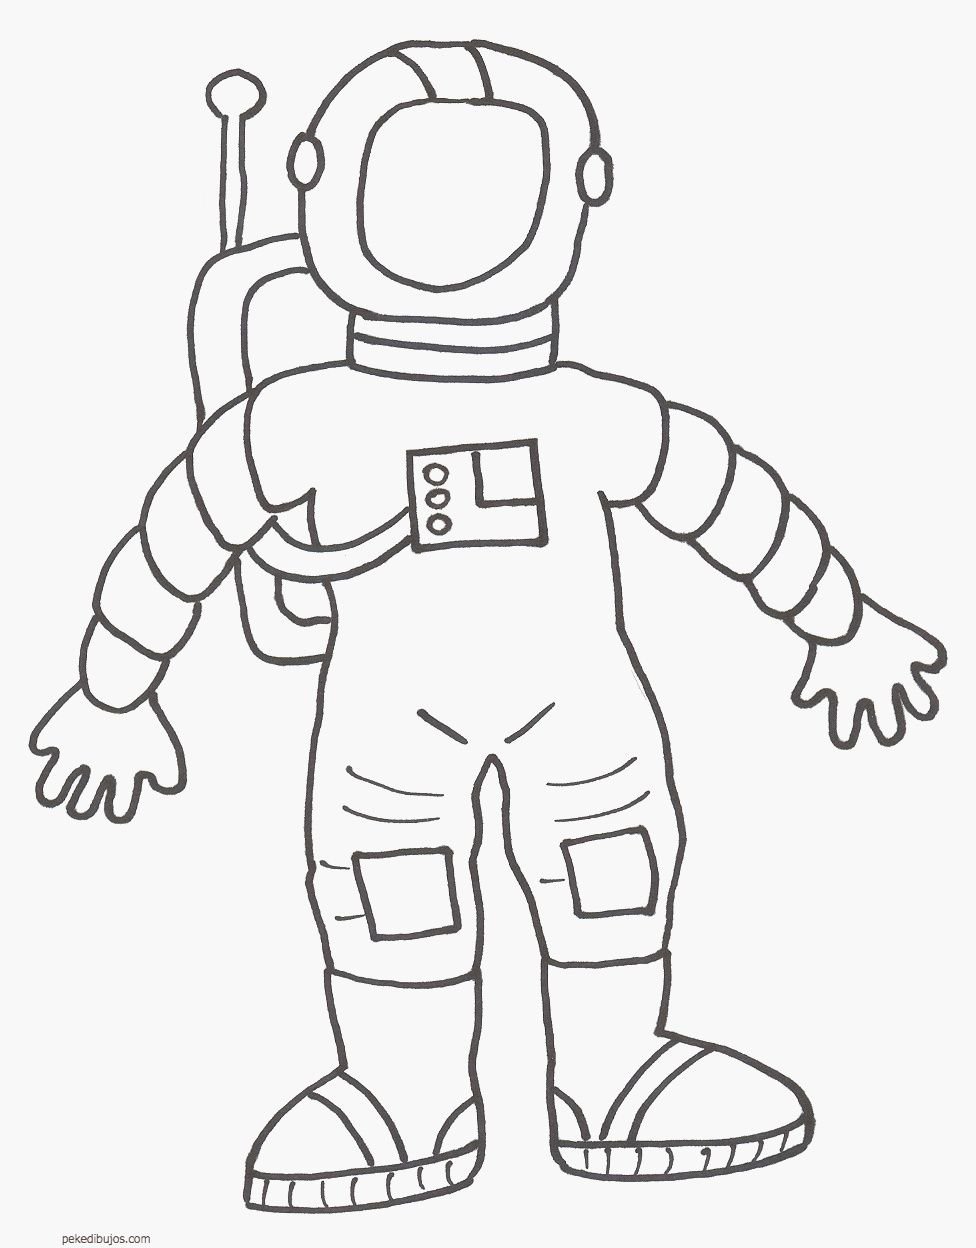 Как нарисовать скафандр. Космонавт рисунок для детей. Космонавт раскраска для детей. Раскраска космонавт в скафандре. Раскраска Космонавта в скафандре для детей.